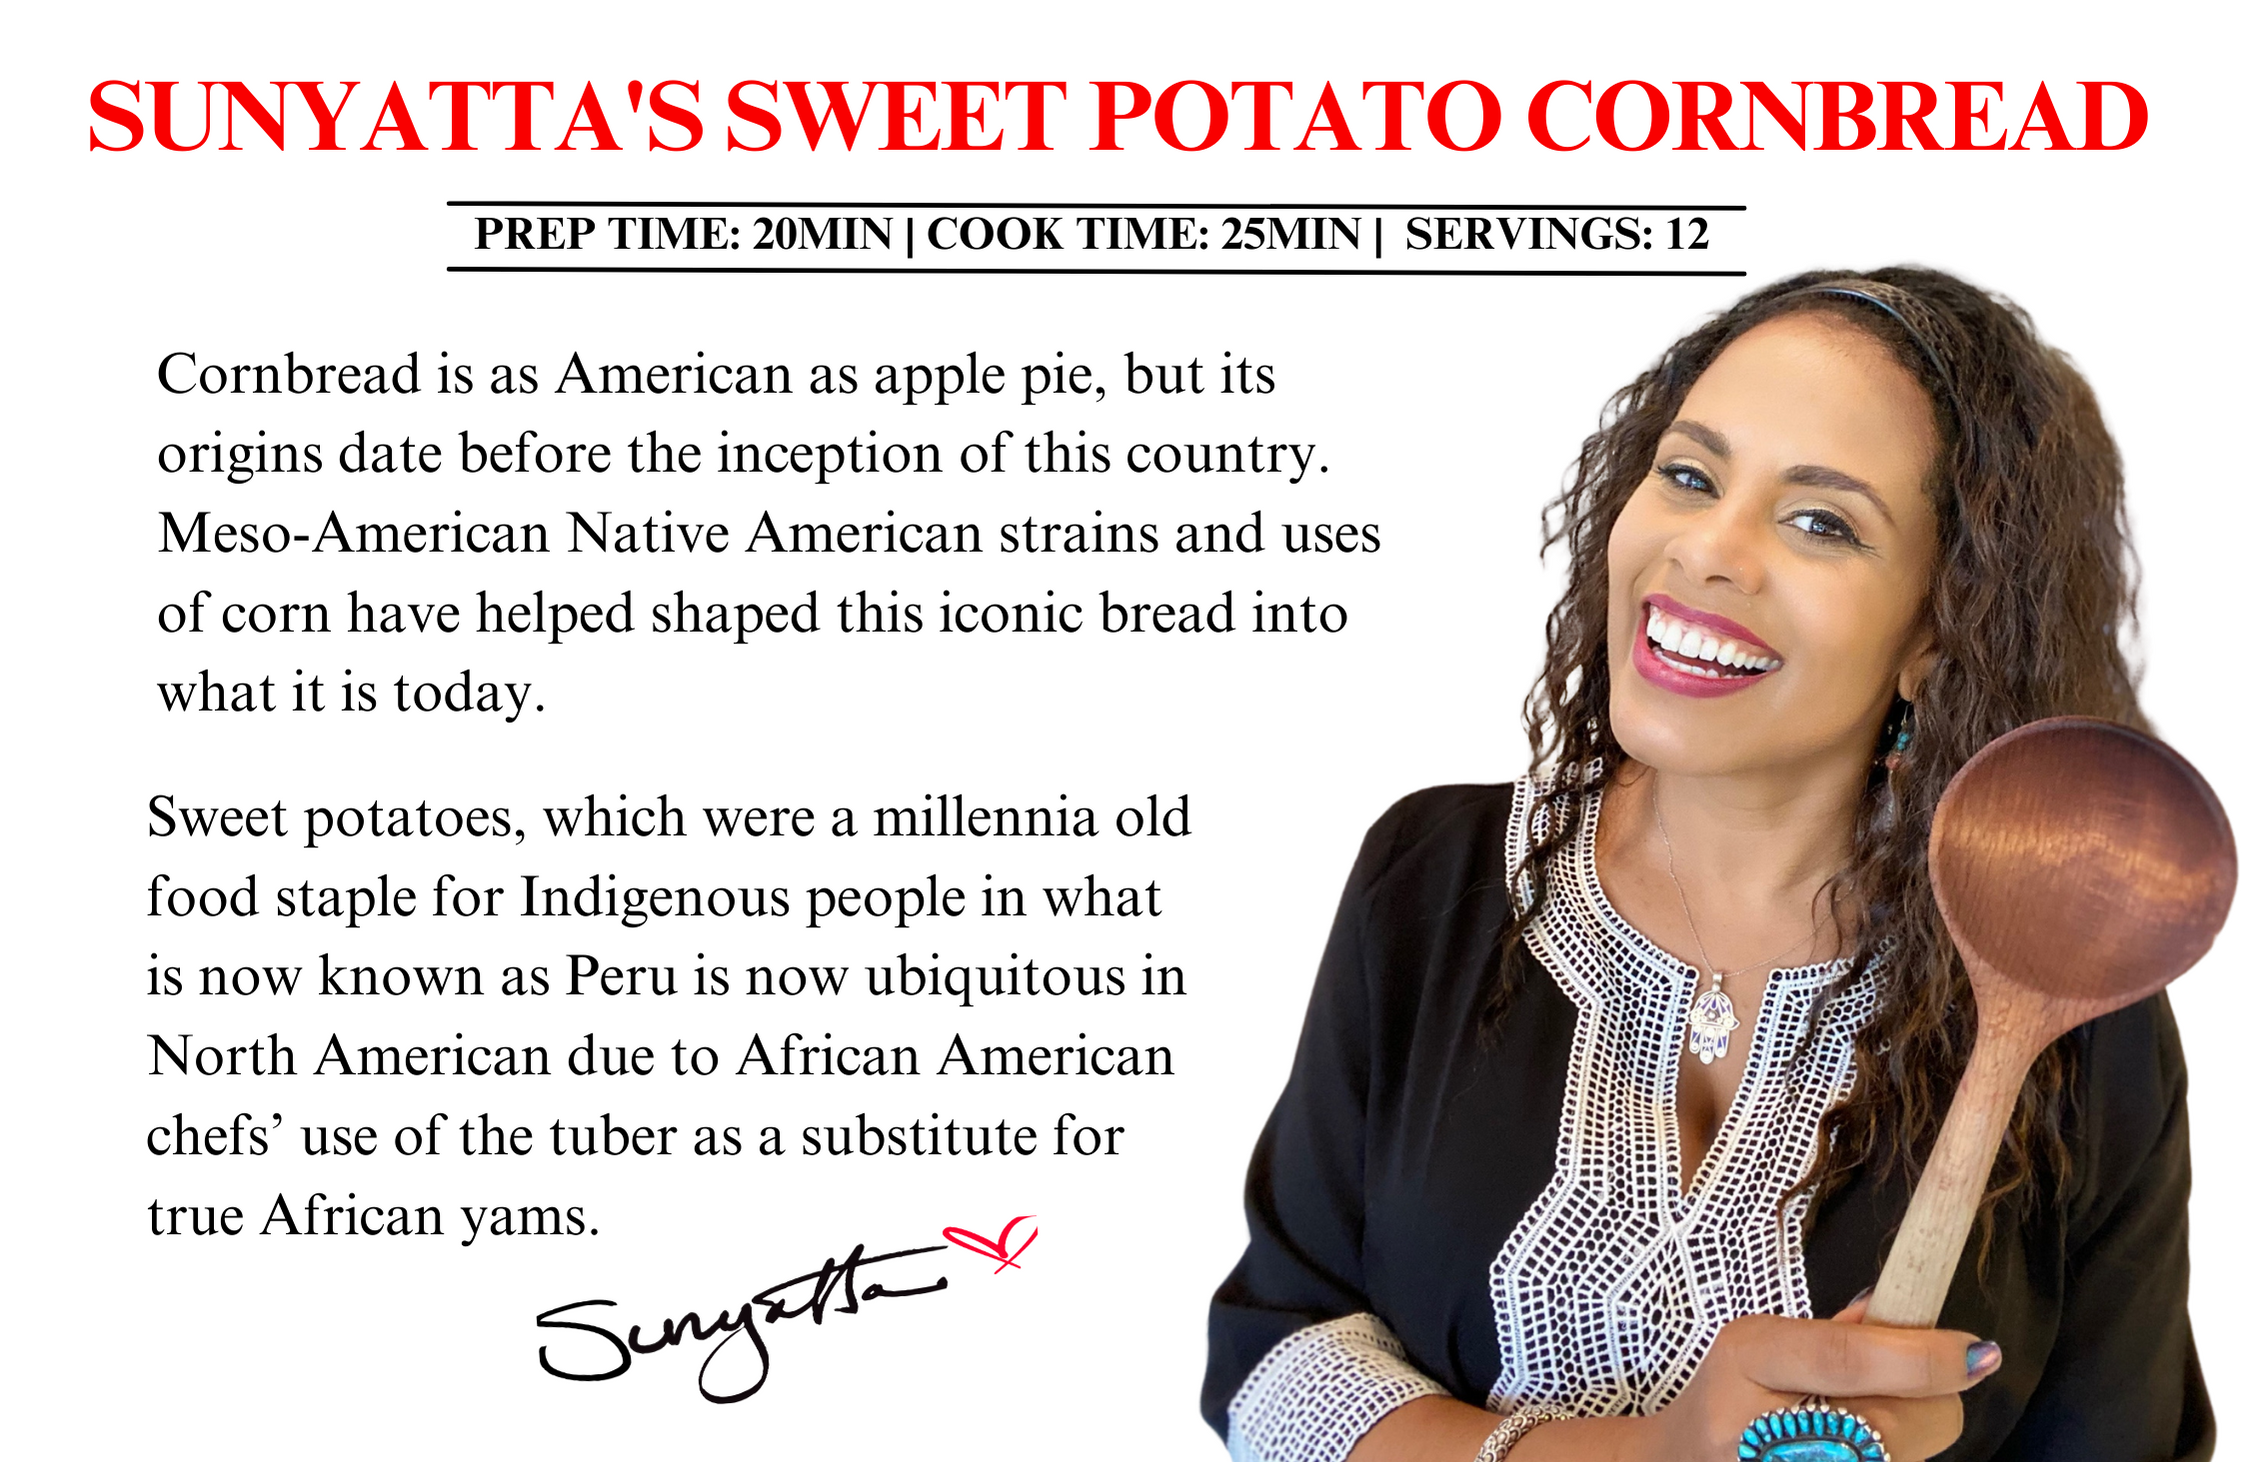 Sunyatta's Sweet Potato Cornbread